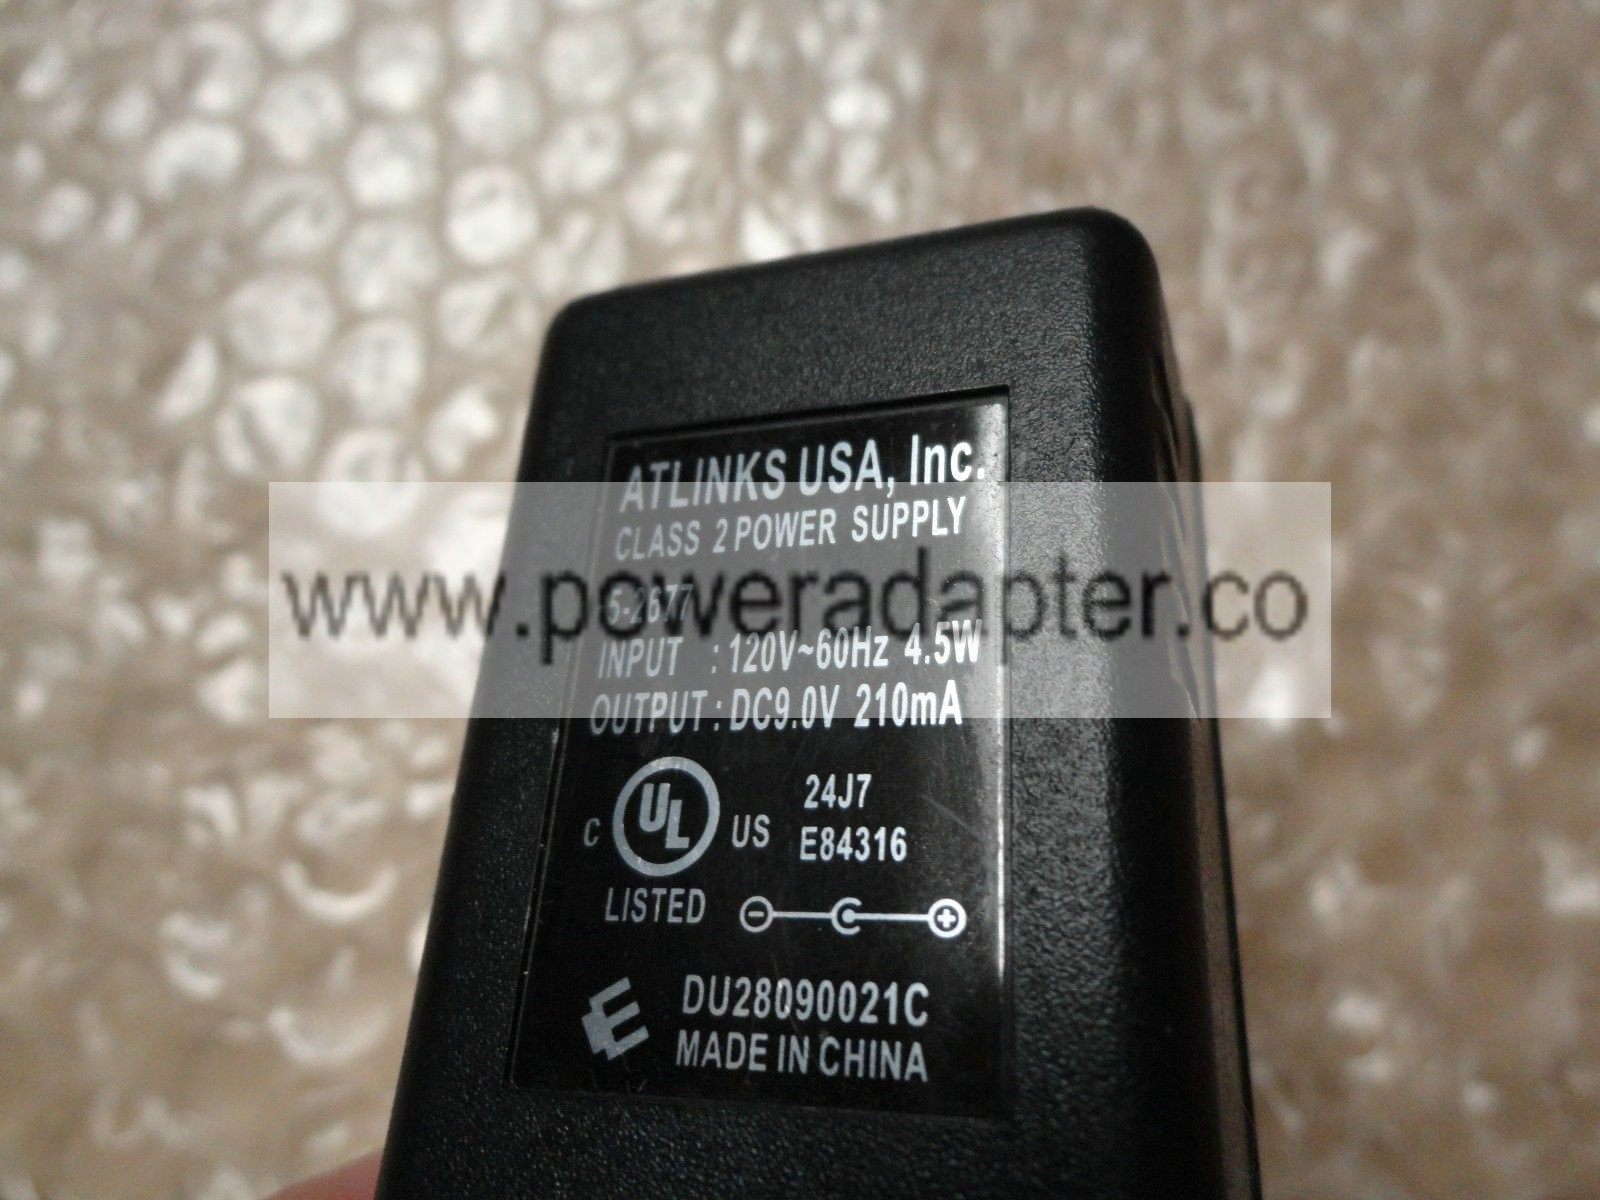 Original OEM Atlinks Class 2 AC Power Supply Adapter 5-2677 9V DC 210mA brand:ATLINKS input:120v 60hz 4.5w output:DC